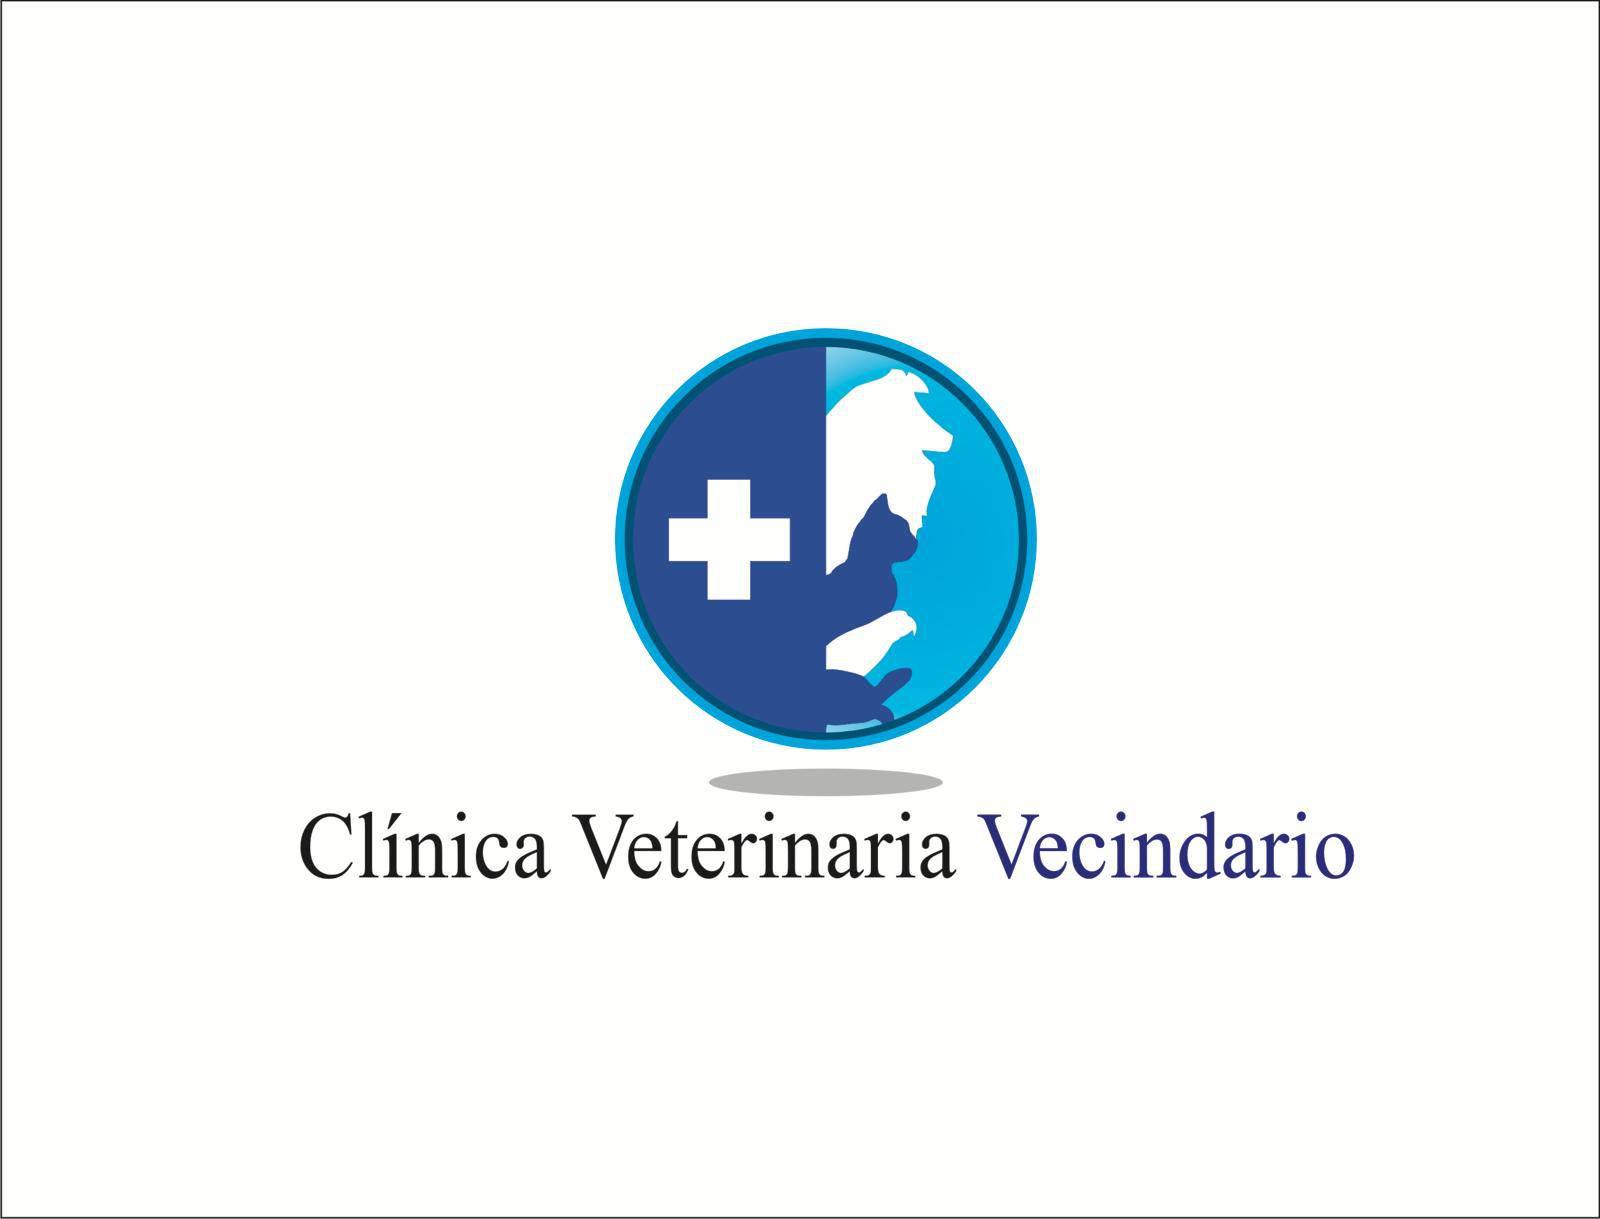  Clínica Veterinaria Vecindario